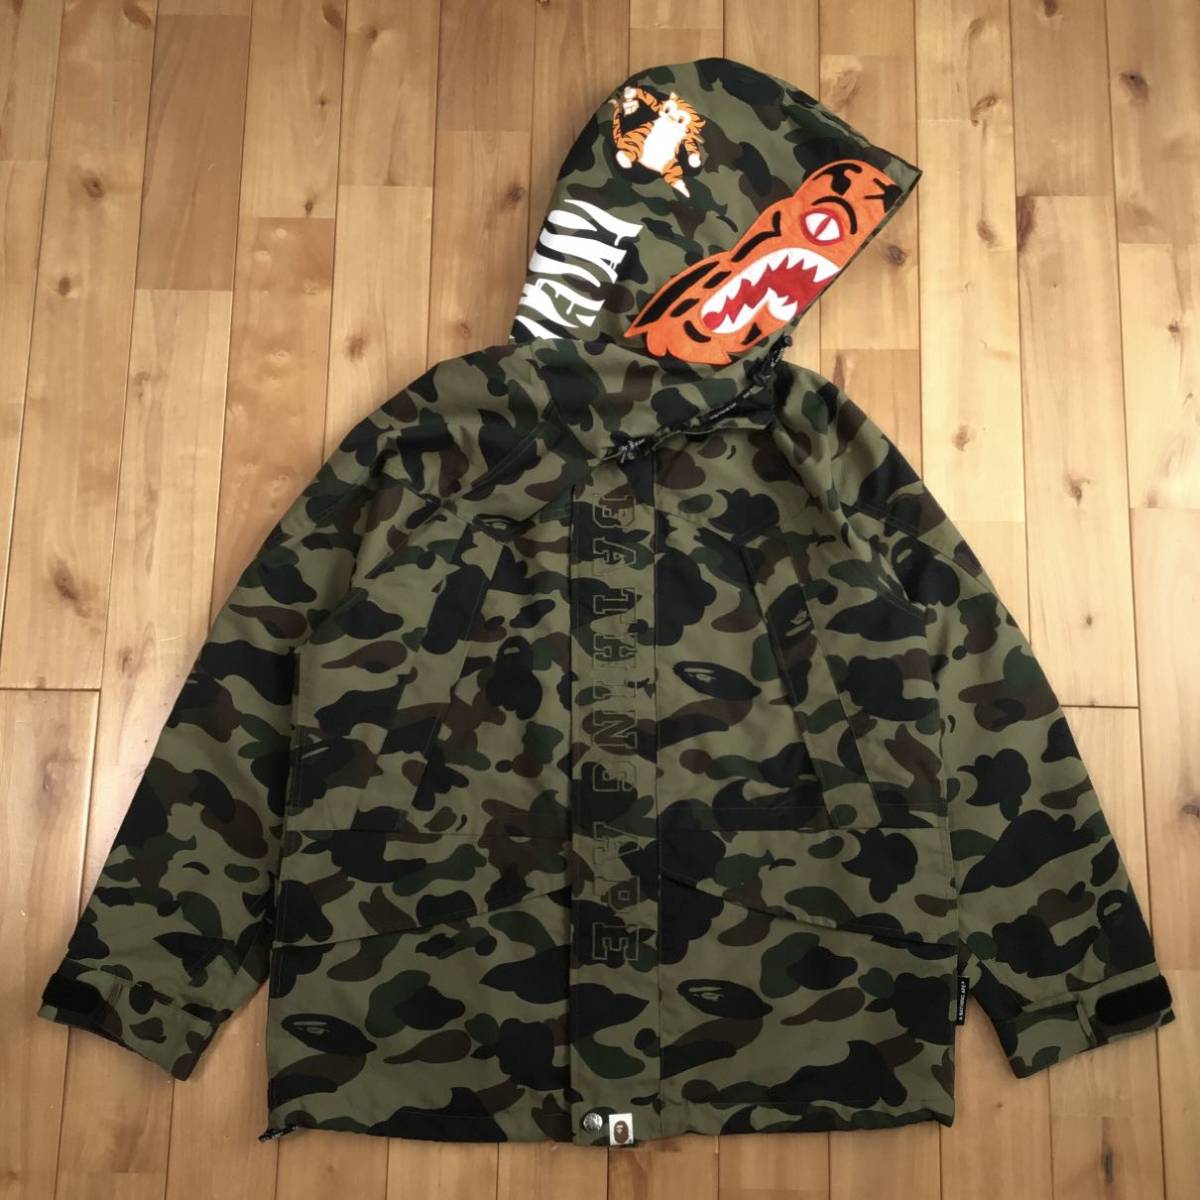 タイガー スノボジャケット Lサイズ a bathing ape Tiger snow board jacket BAPE hoodie 1st camo エイプ ベイプ パーカー z2275